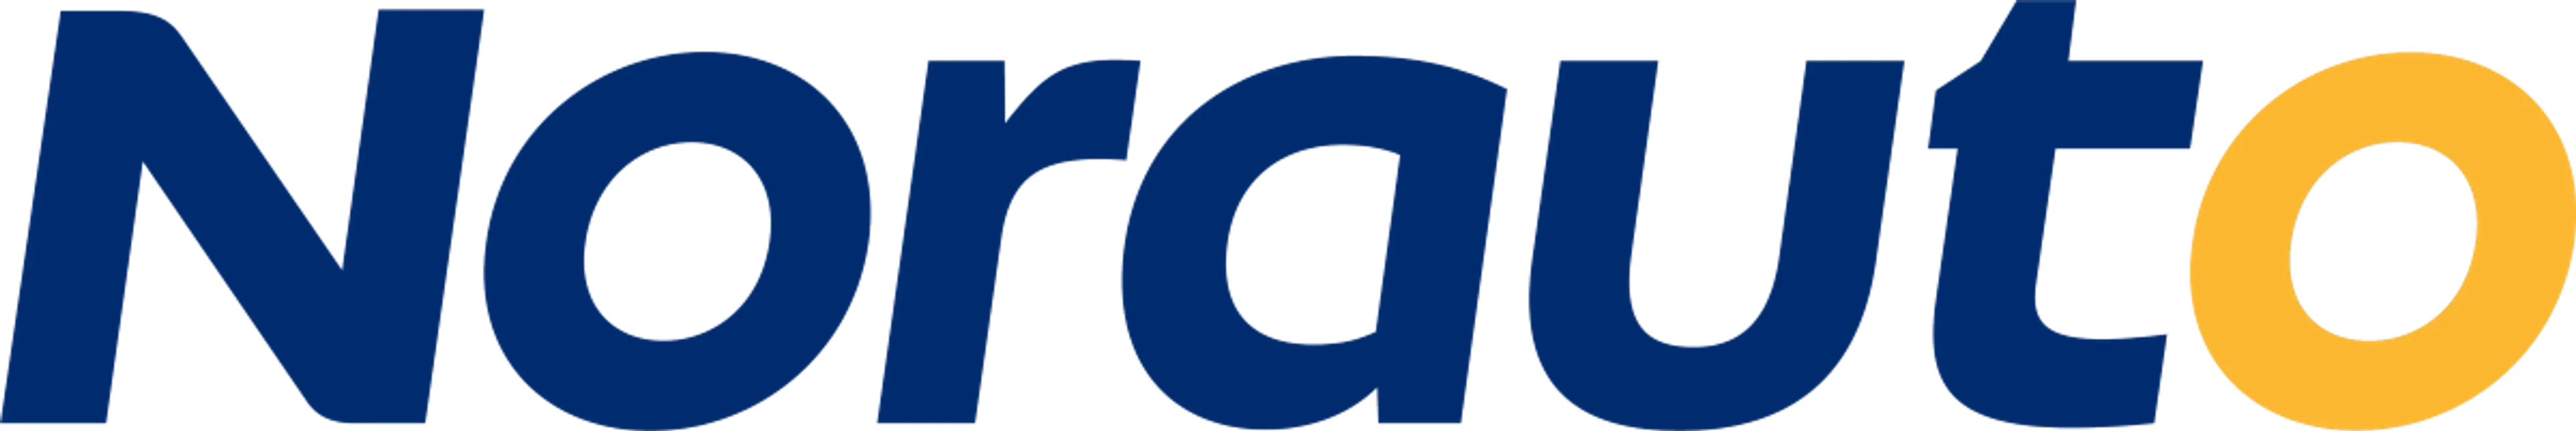 NORAUTO logo